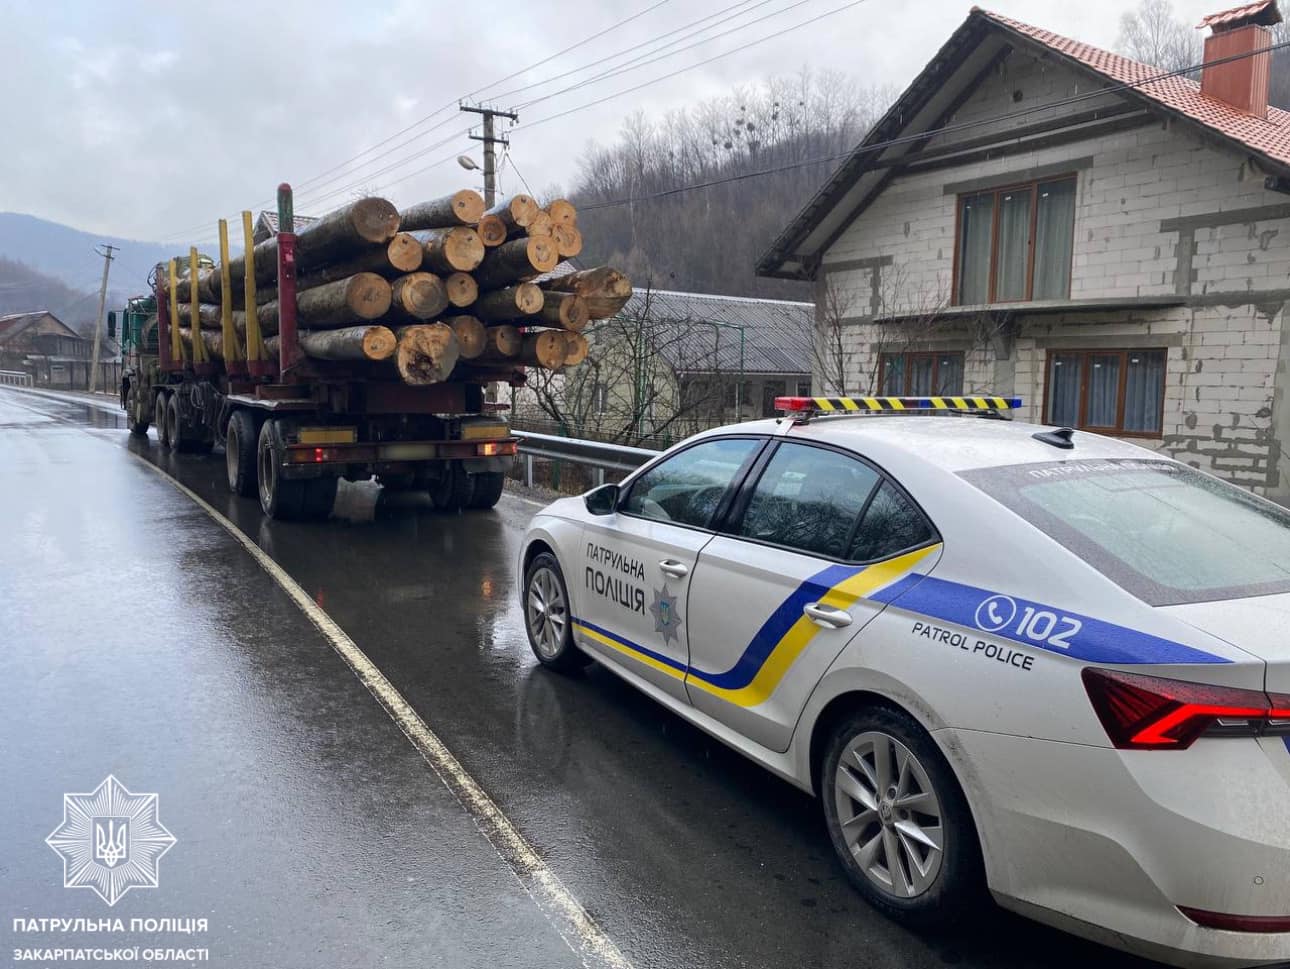 Закарпатські патрульні виявили у водія вантажівки деревину, документи на яку не відповідали дійсності.